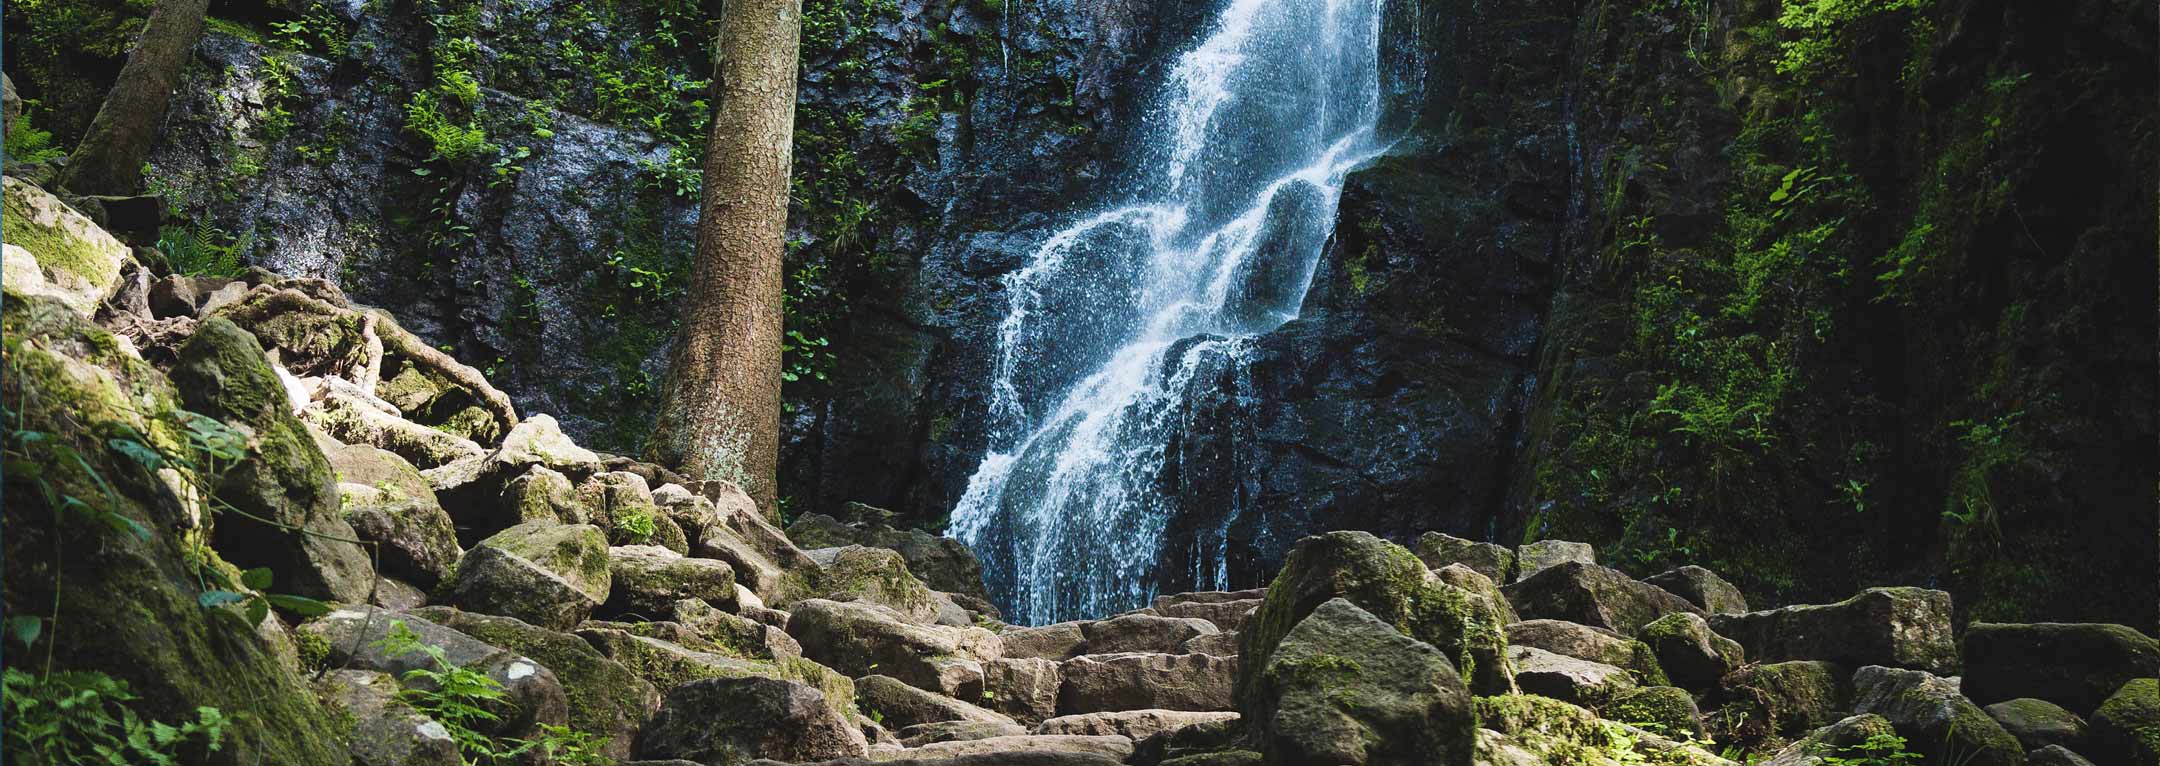 Slider Wasserfall, Wandern, queerer Wanderurlaub 2023, gemeinsam minimalistisch zurückgezogen abschalten, besinnen, Kraft tanken, ankommen, Natur genießen, Yoga & Meditation